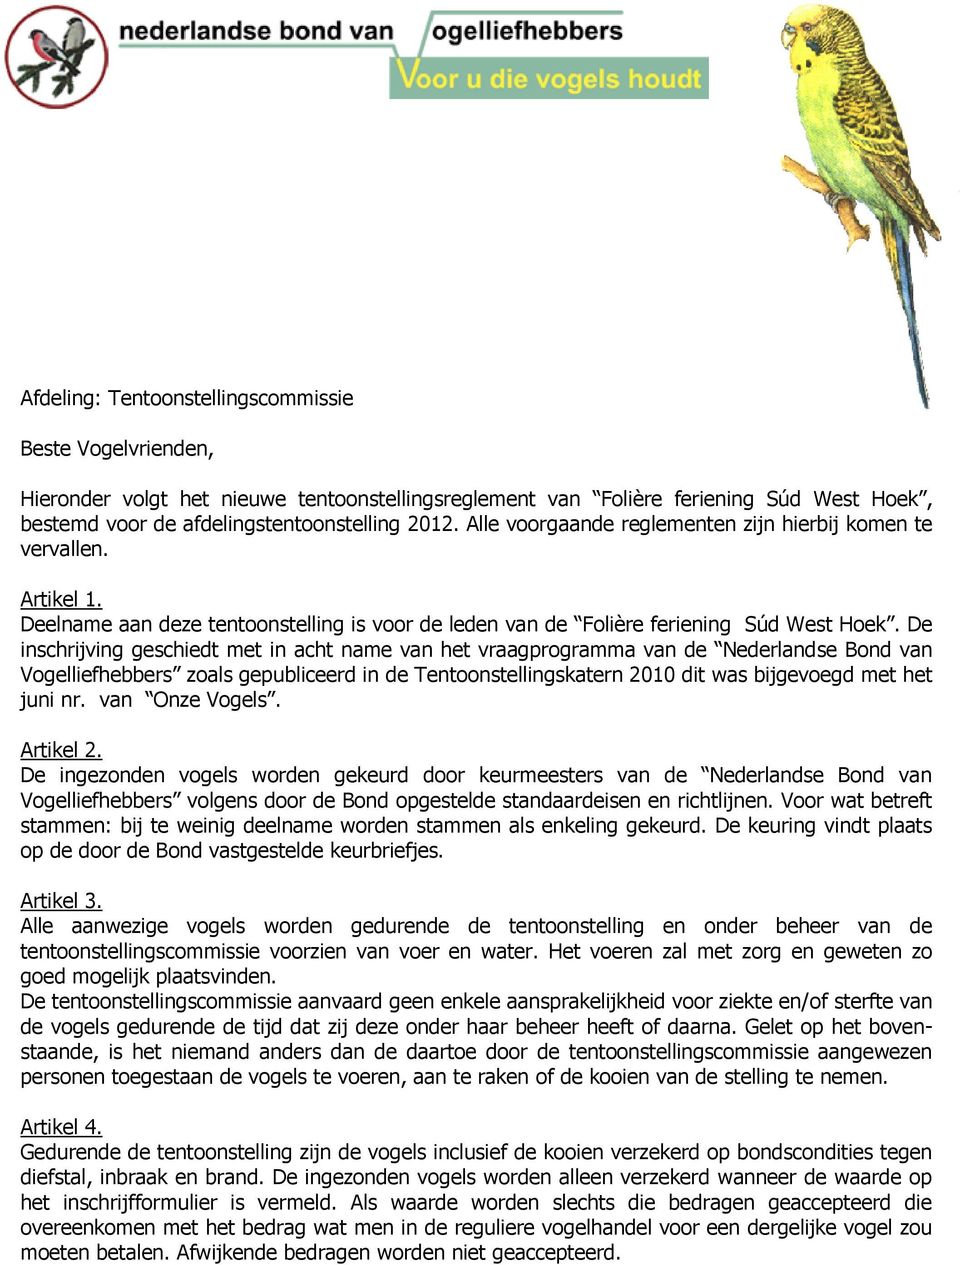 De inschrijving geschiedt met in acht name van het vraagprogramma van de Nederlandse Bond van Vogelliefhebbers zoals gepubliceerd in de Tentoonstellingskatern 2010 dit was bijgevoegd met het juni nr.